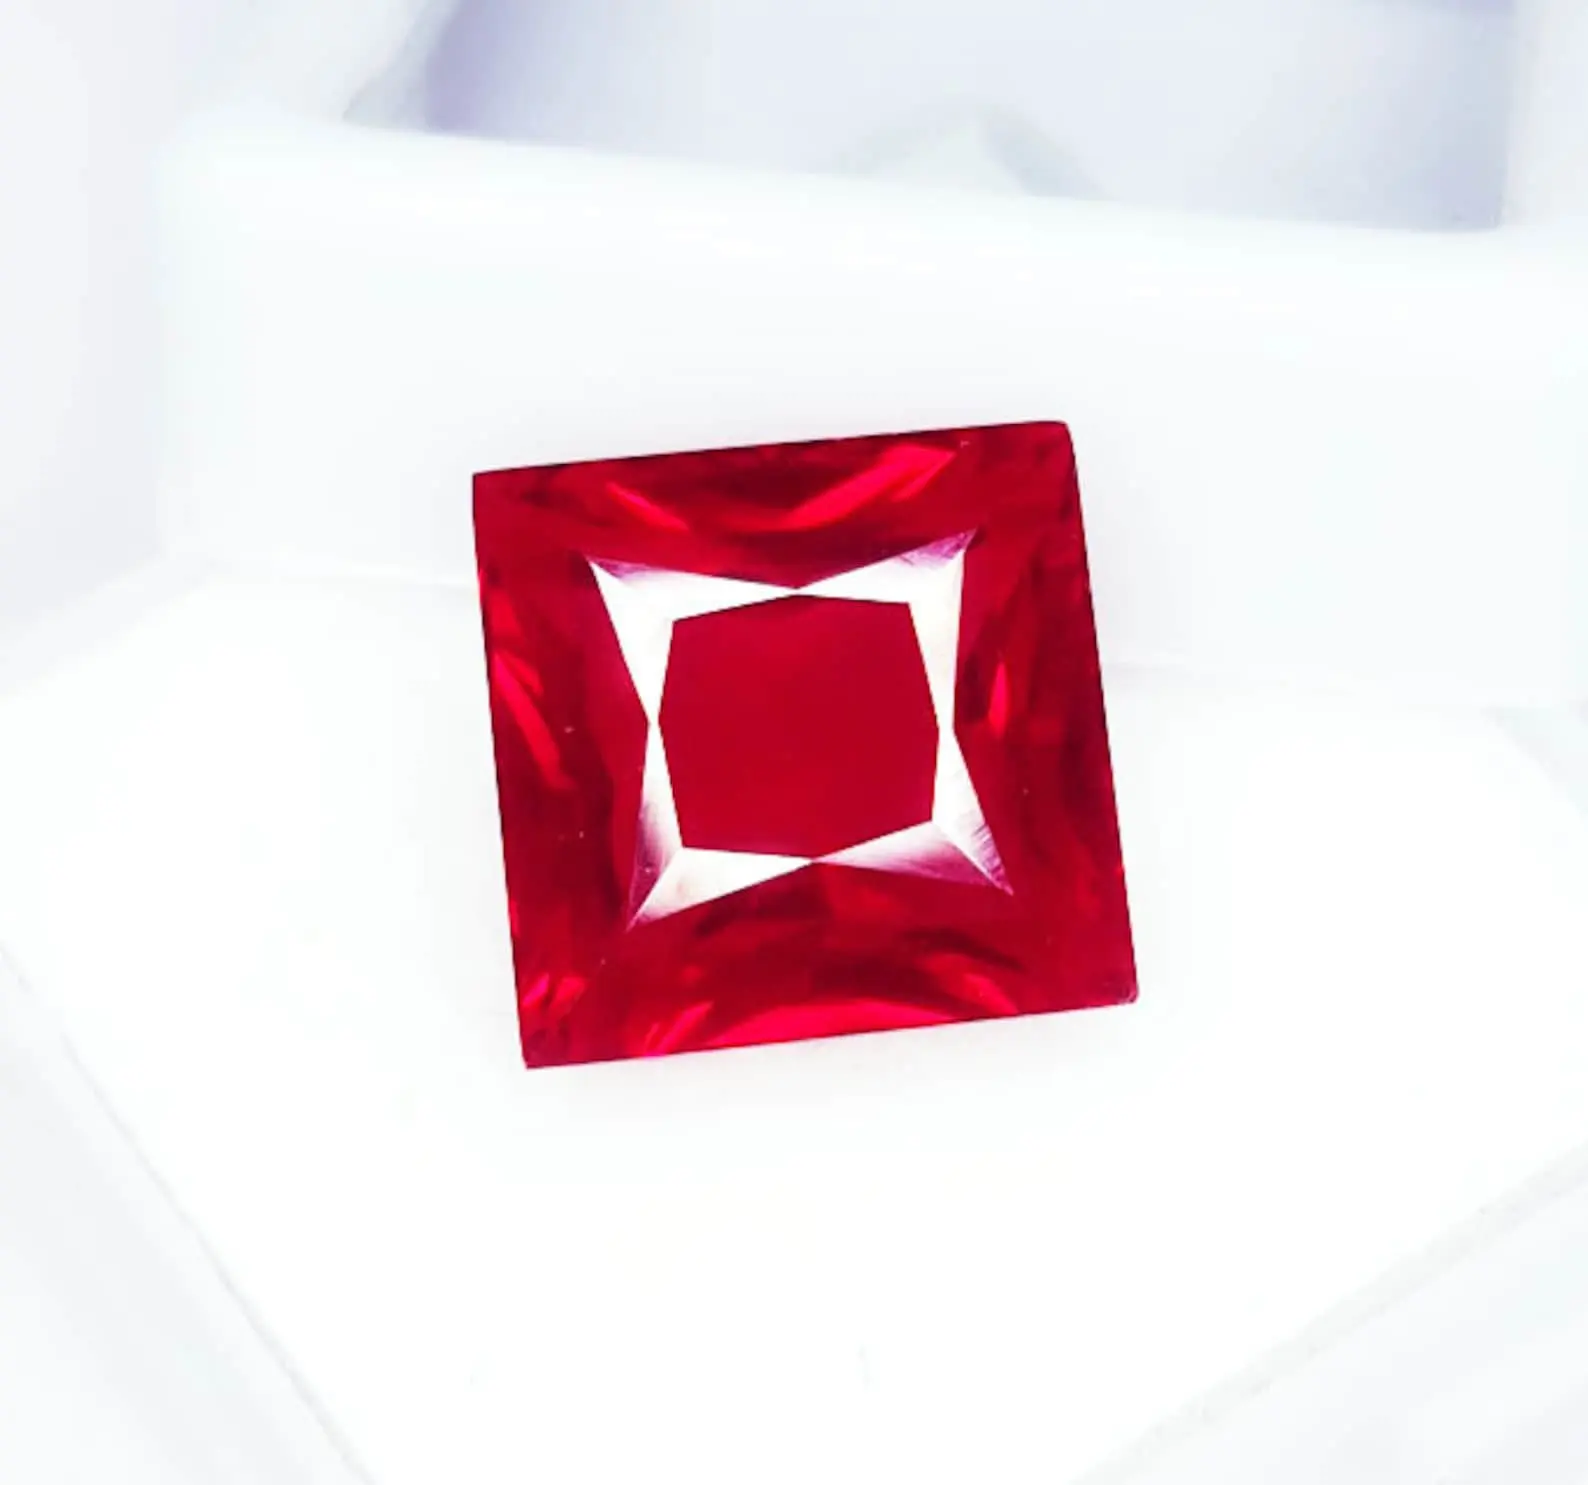 Piedra preciosa suelta de rubí rojo natural 9,42 Ct para tamaño de anillo rojo rubí certificado GIL forma de princesa Madagascar gemas de rubí rojo transparente